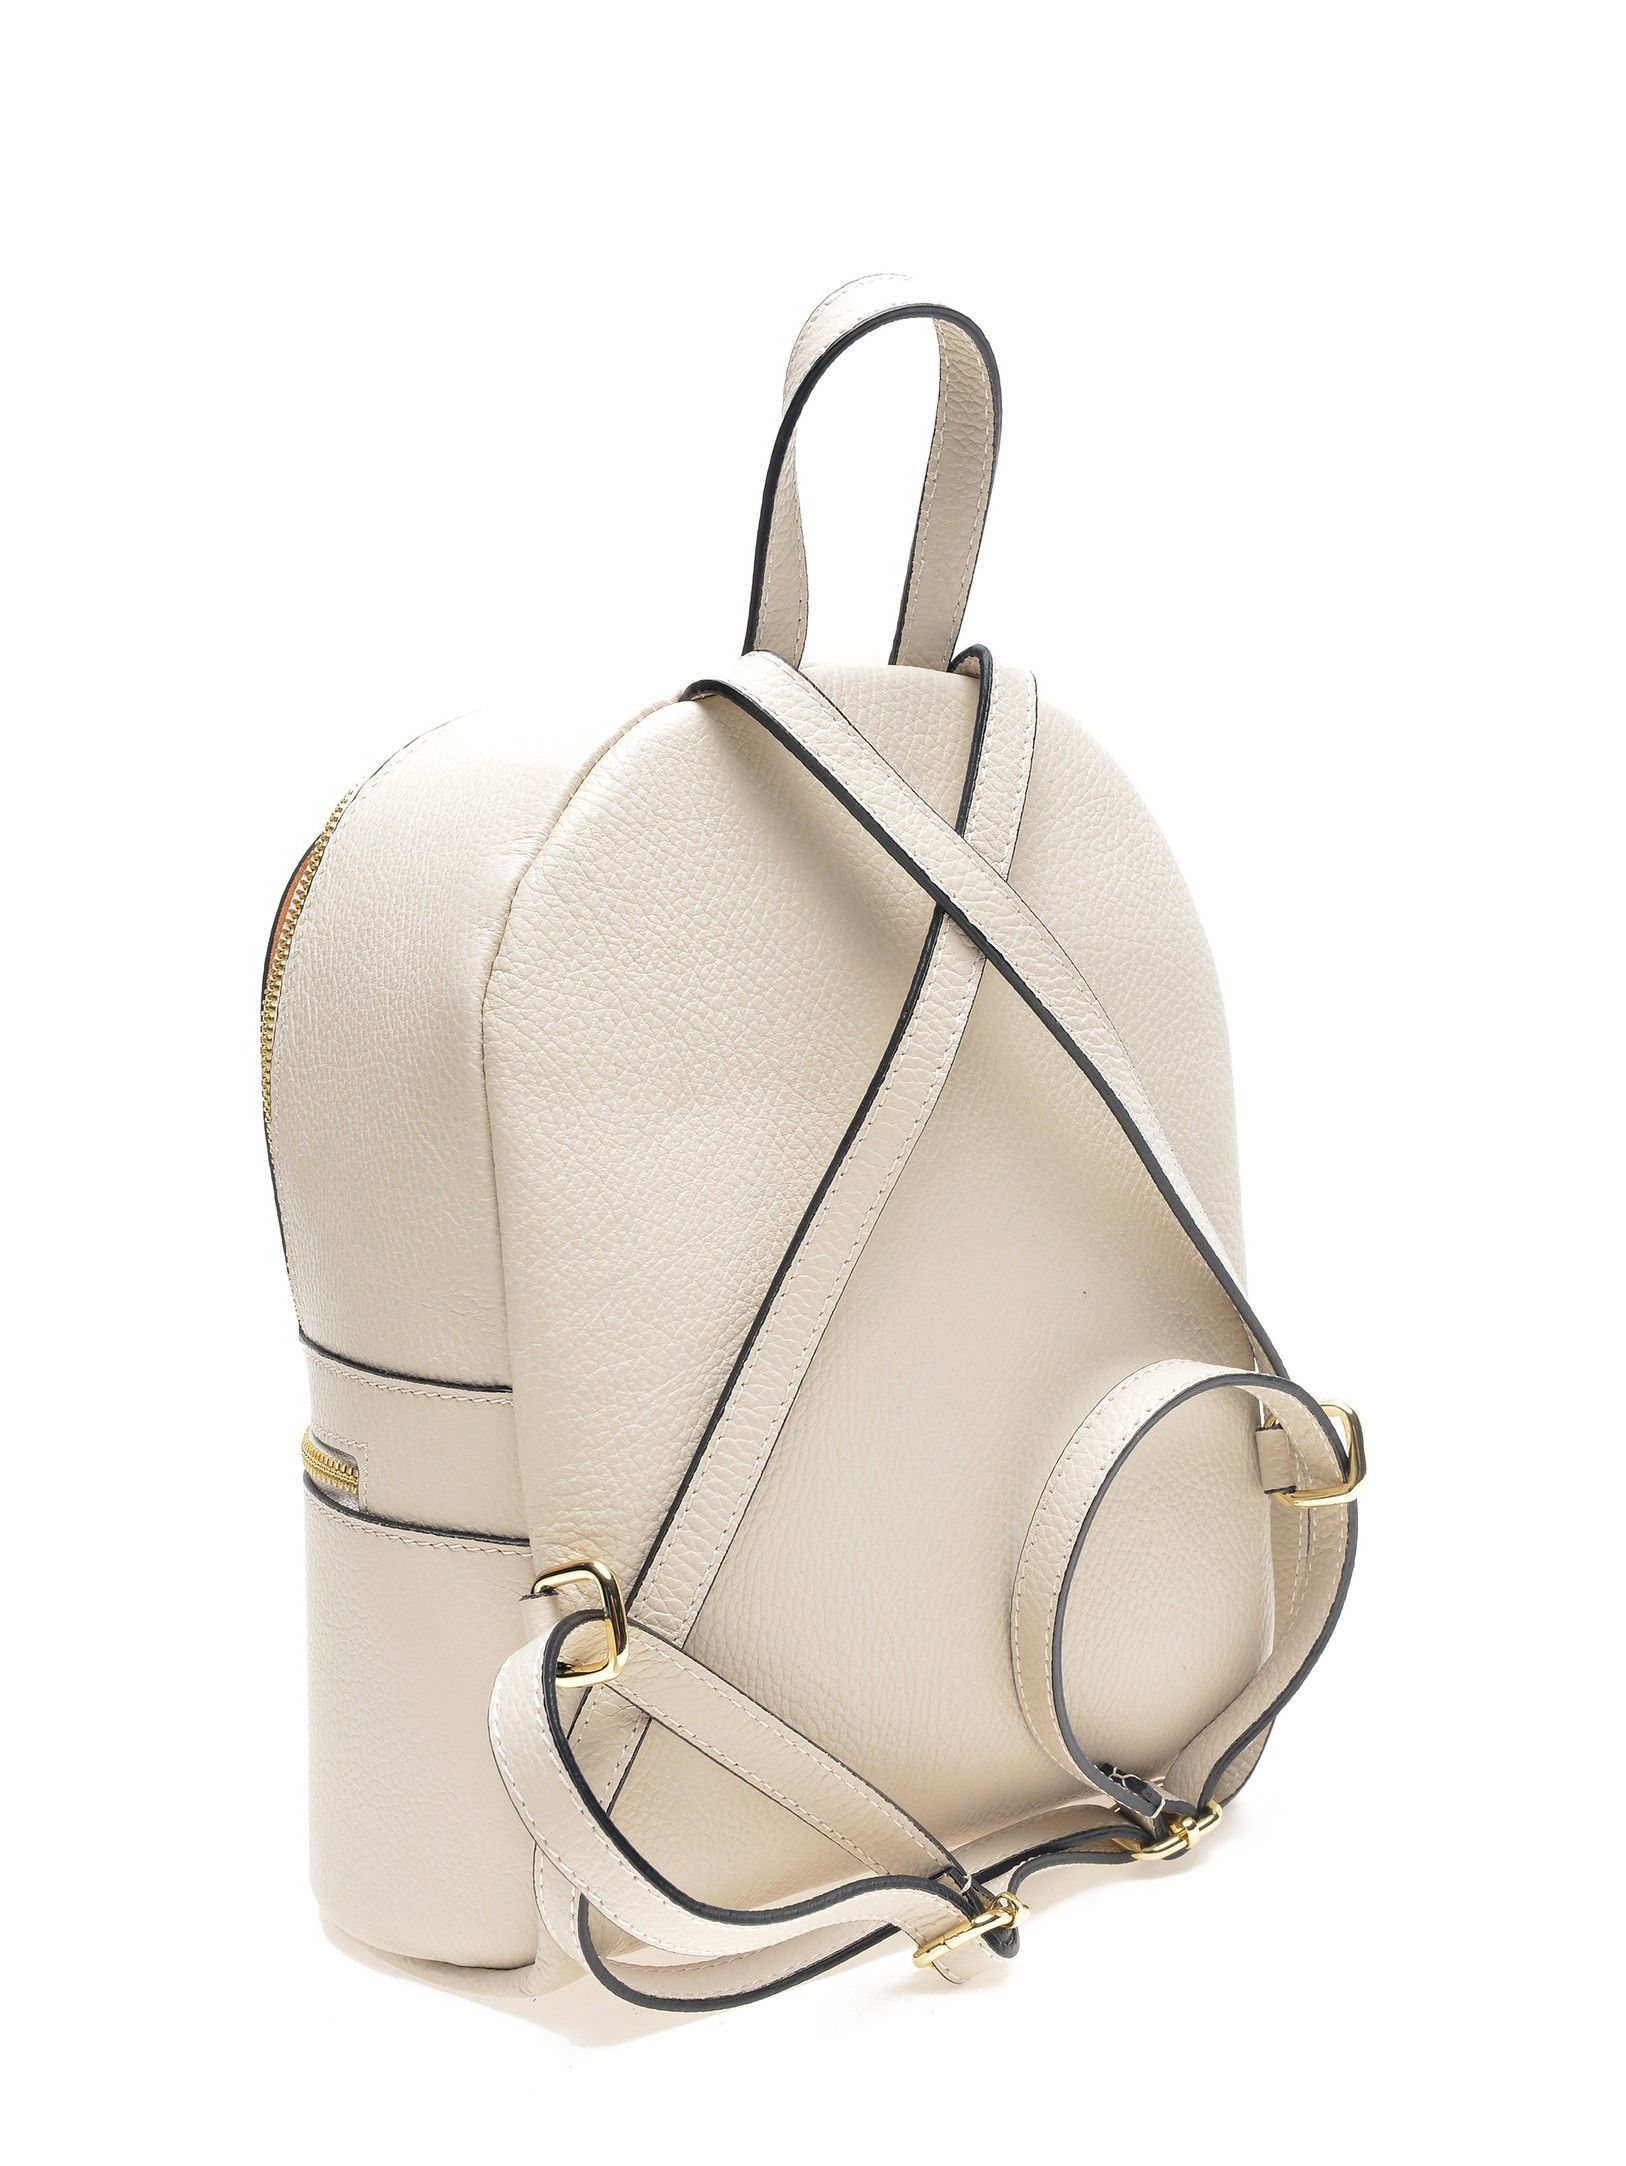 Backpack
100% cow leather
Top zip closure
Front zip pocket
Dimensions (L) 29x23x10 cm
Handle: 19.5 cm
Shoulder strap: 80cm x 5